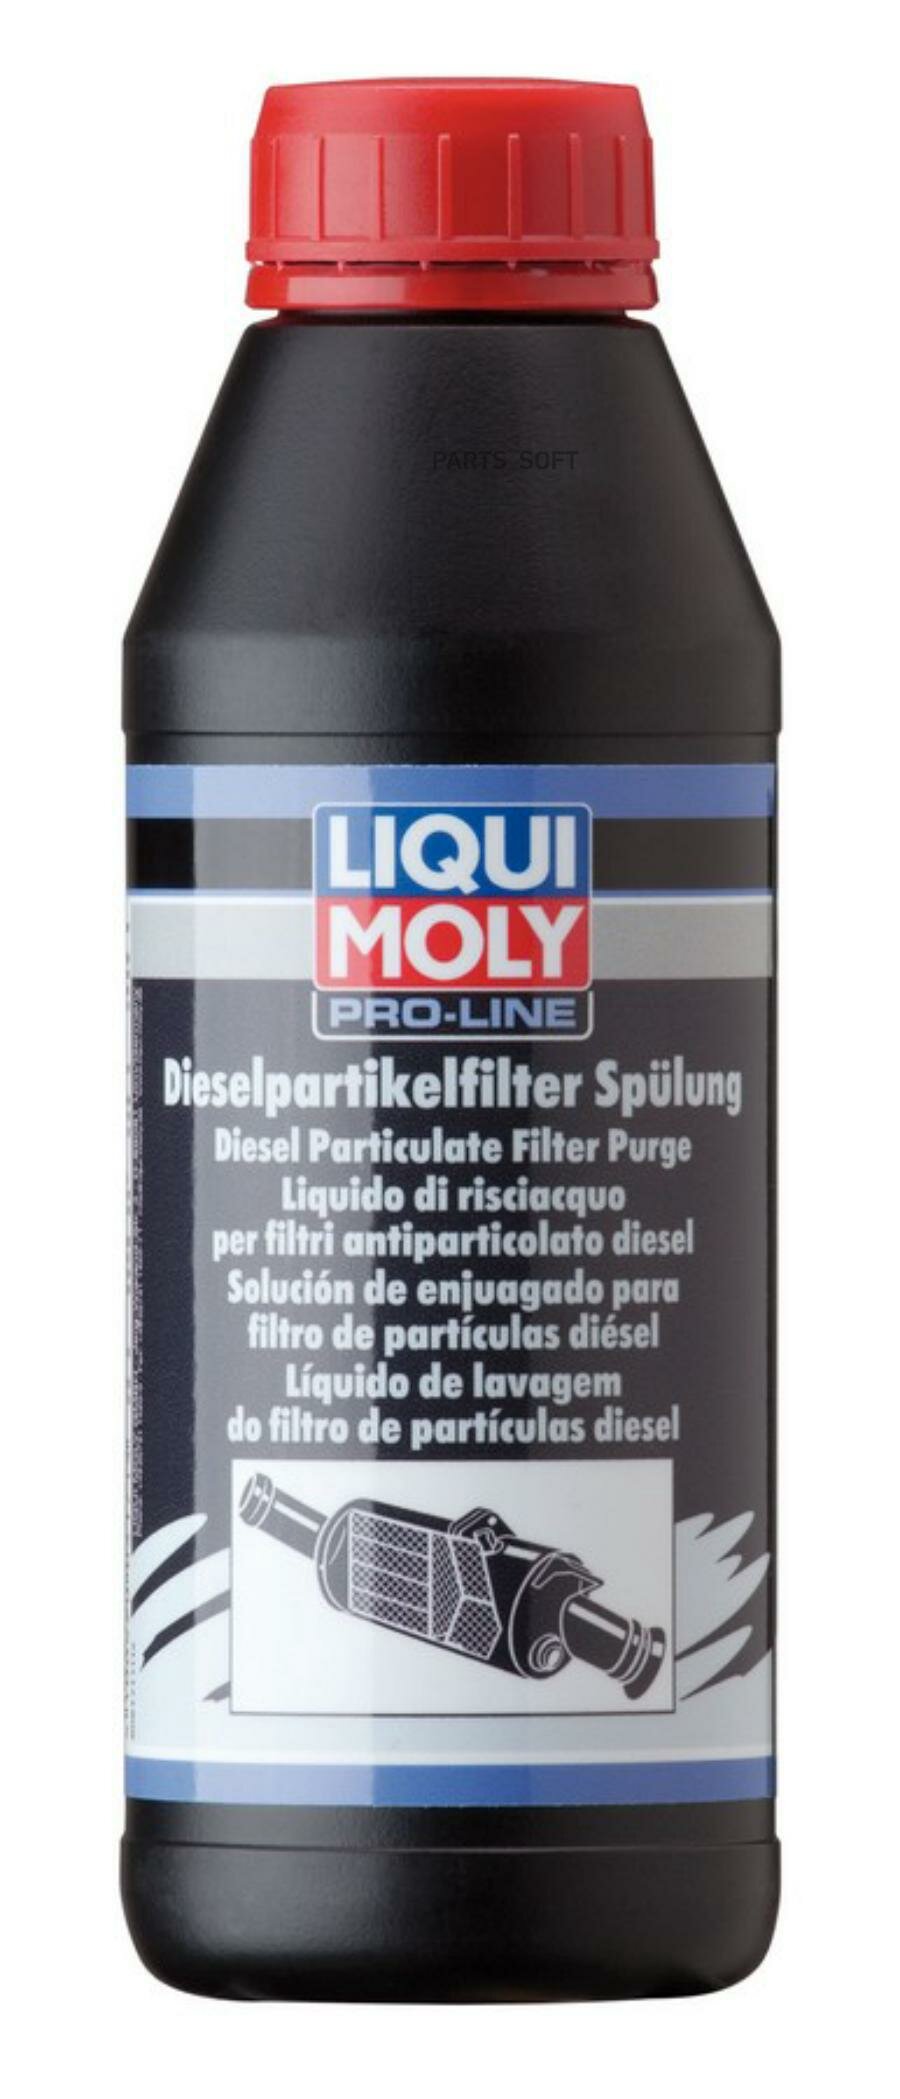 Жидкость промывочная LIQUI MOLY для сажевого фильтра 0.5л. LIQUI MOLY / арт. 5171 - (1 шт)